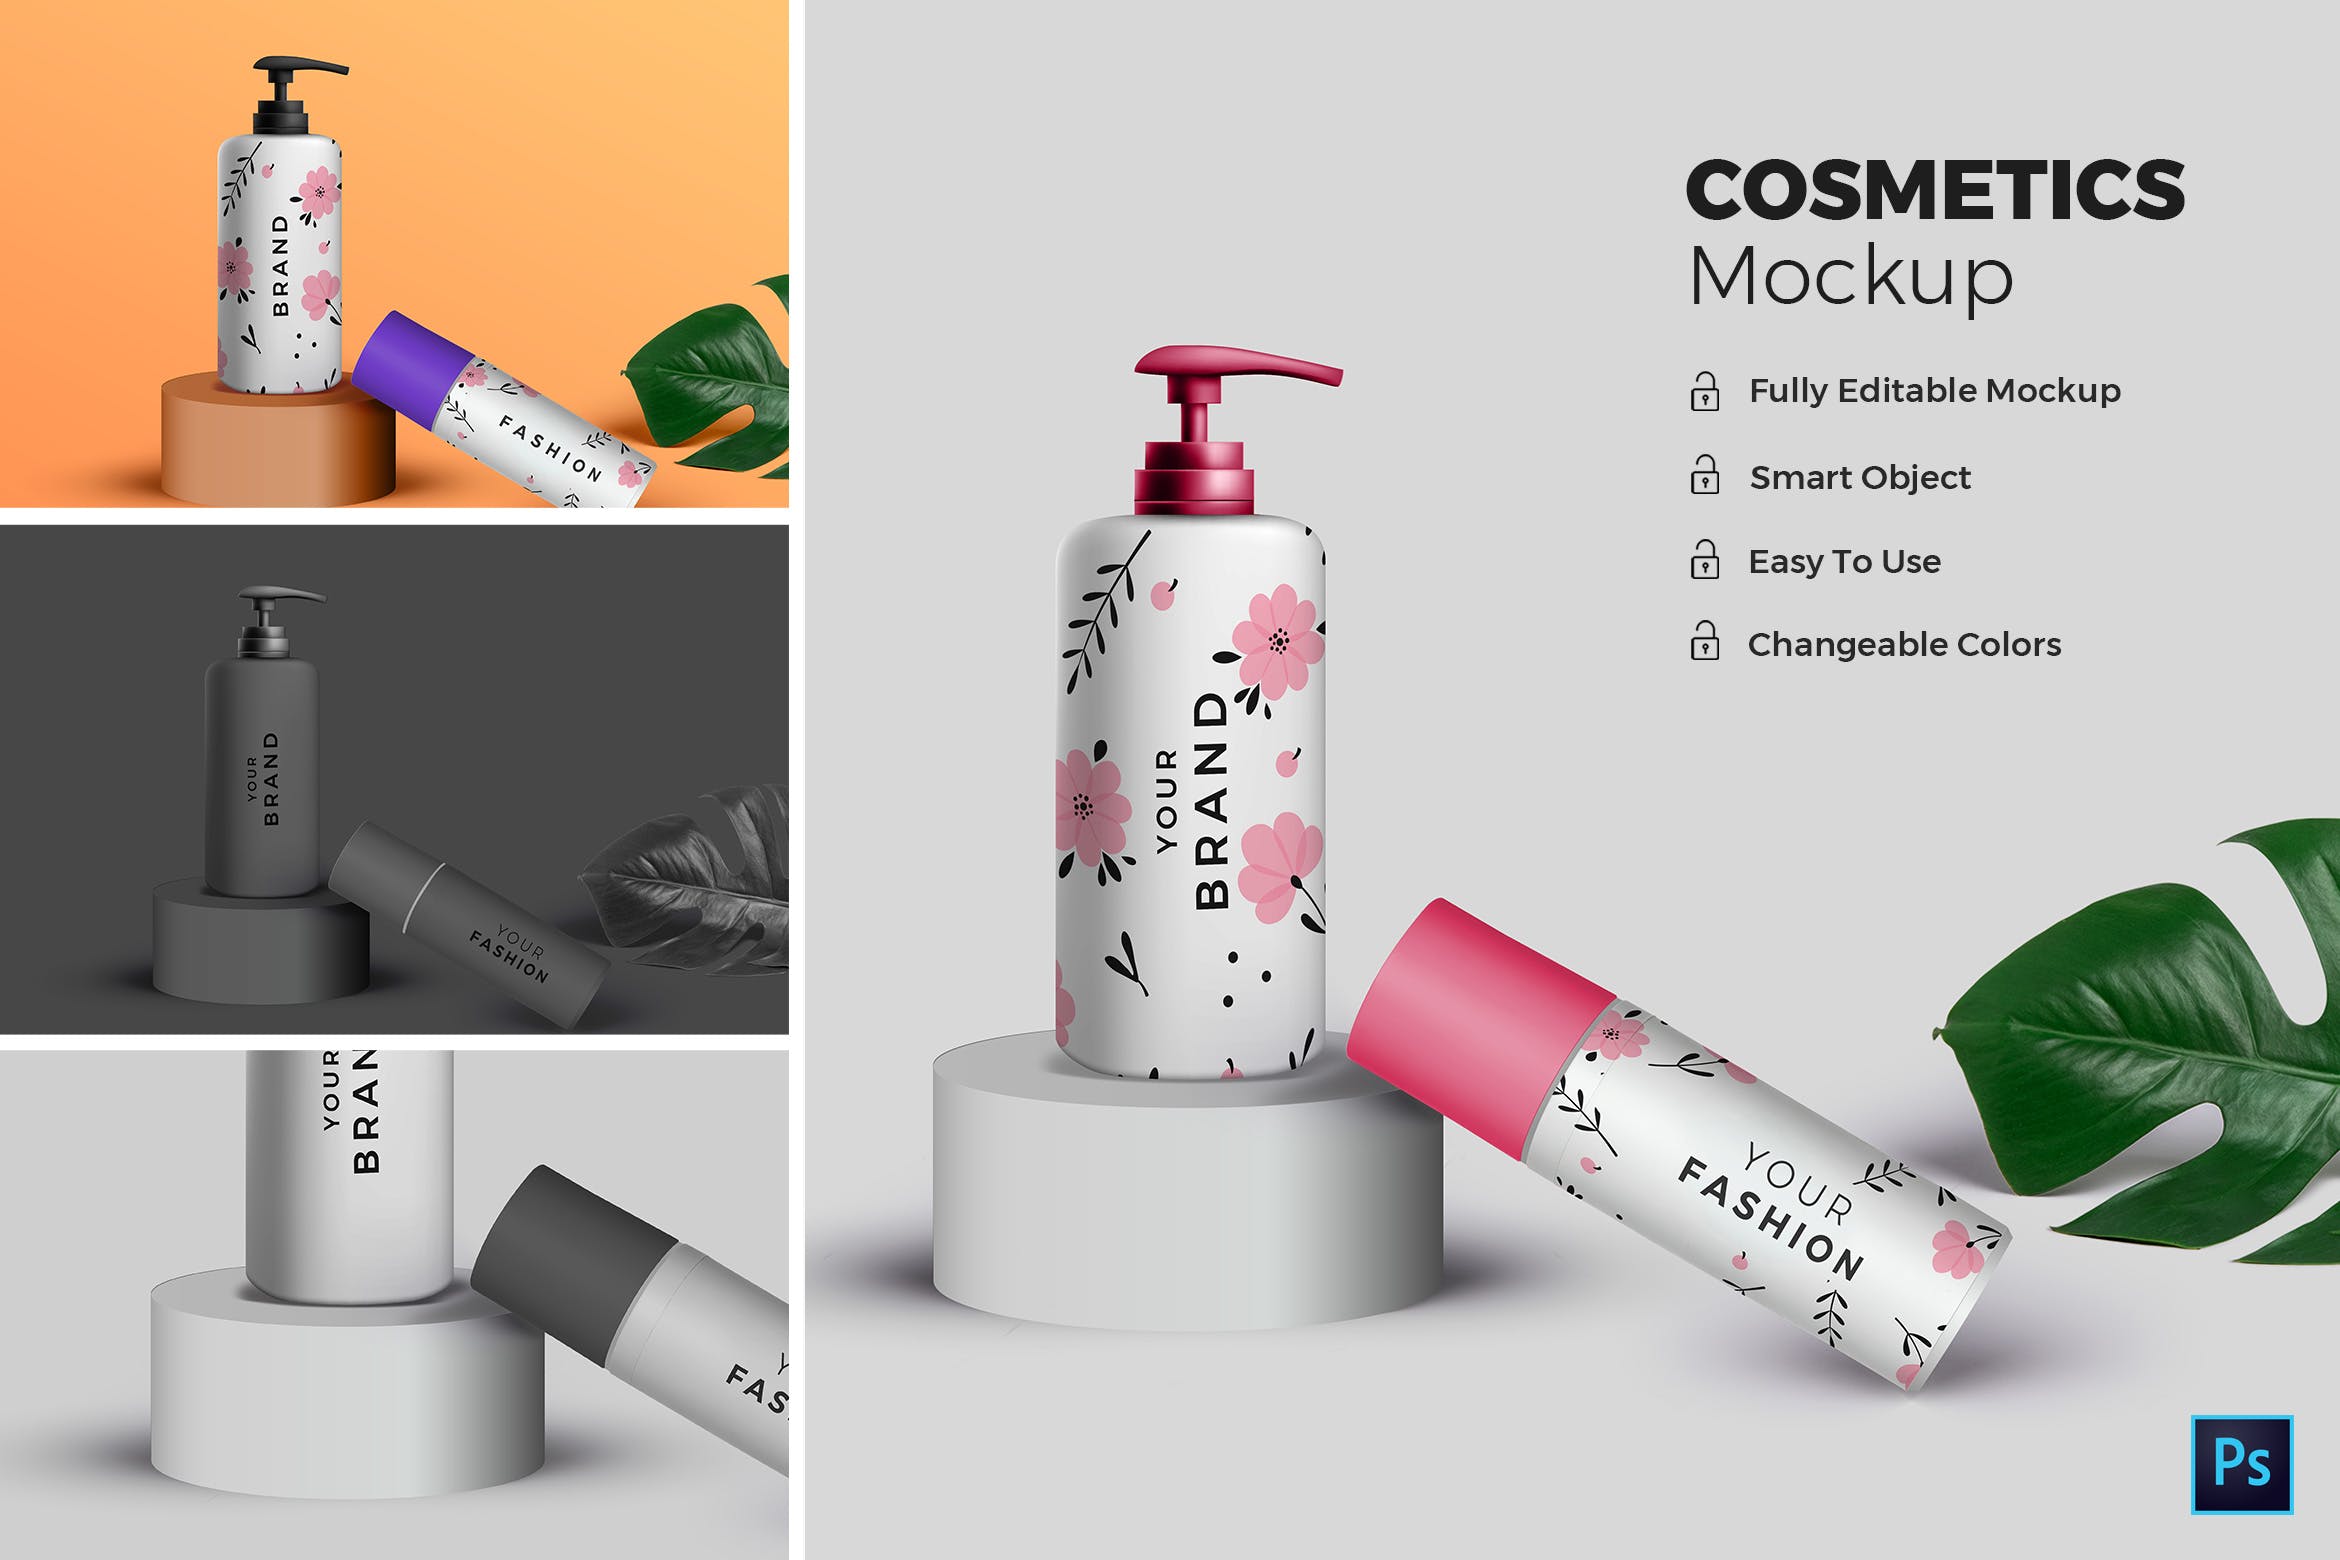 高端化妆品包装外观设计效果图大洋岛精选 Cosmetic Mockup插图